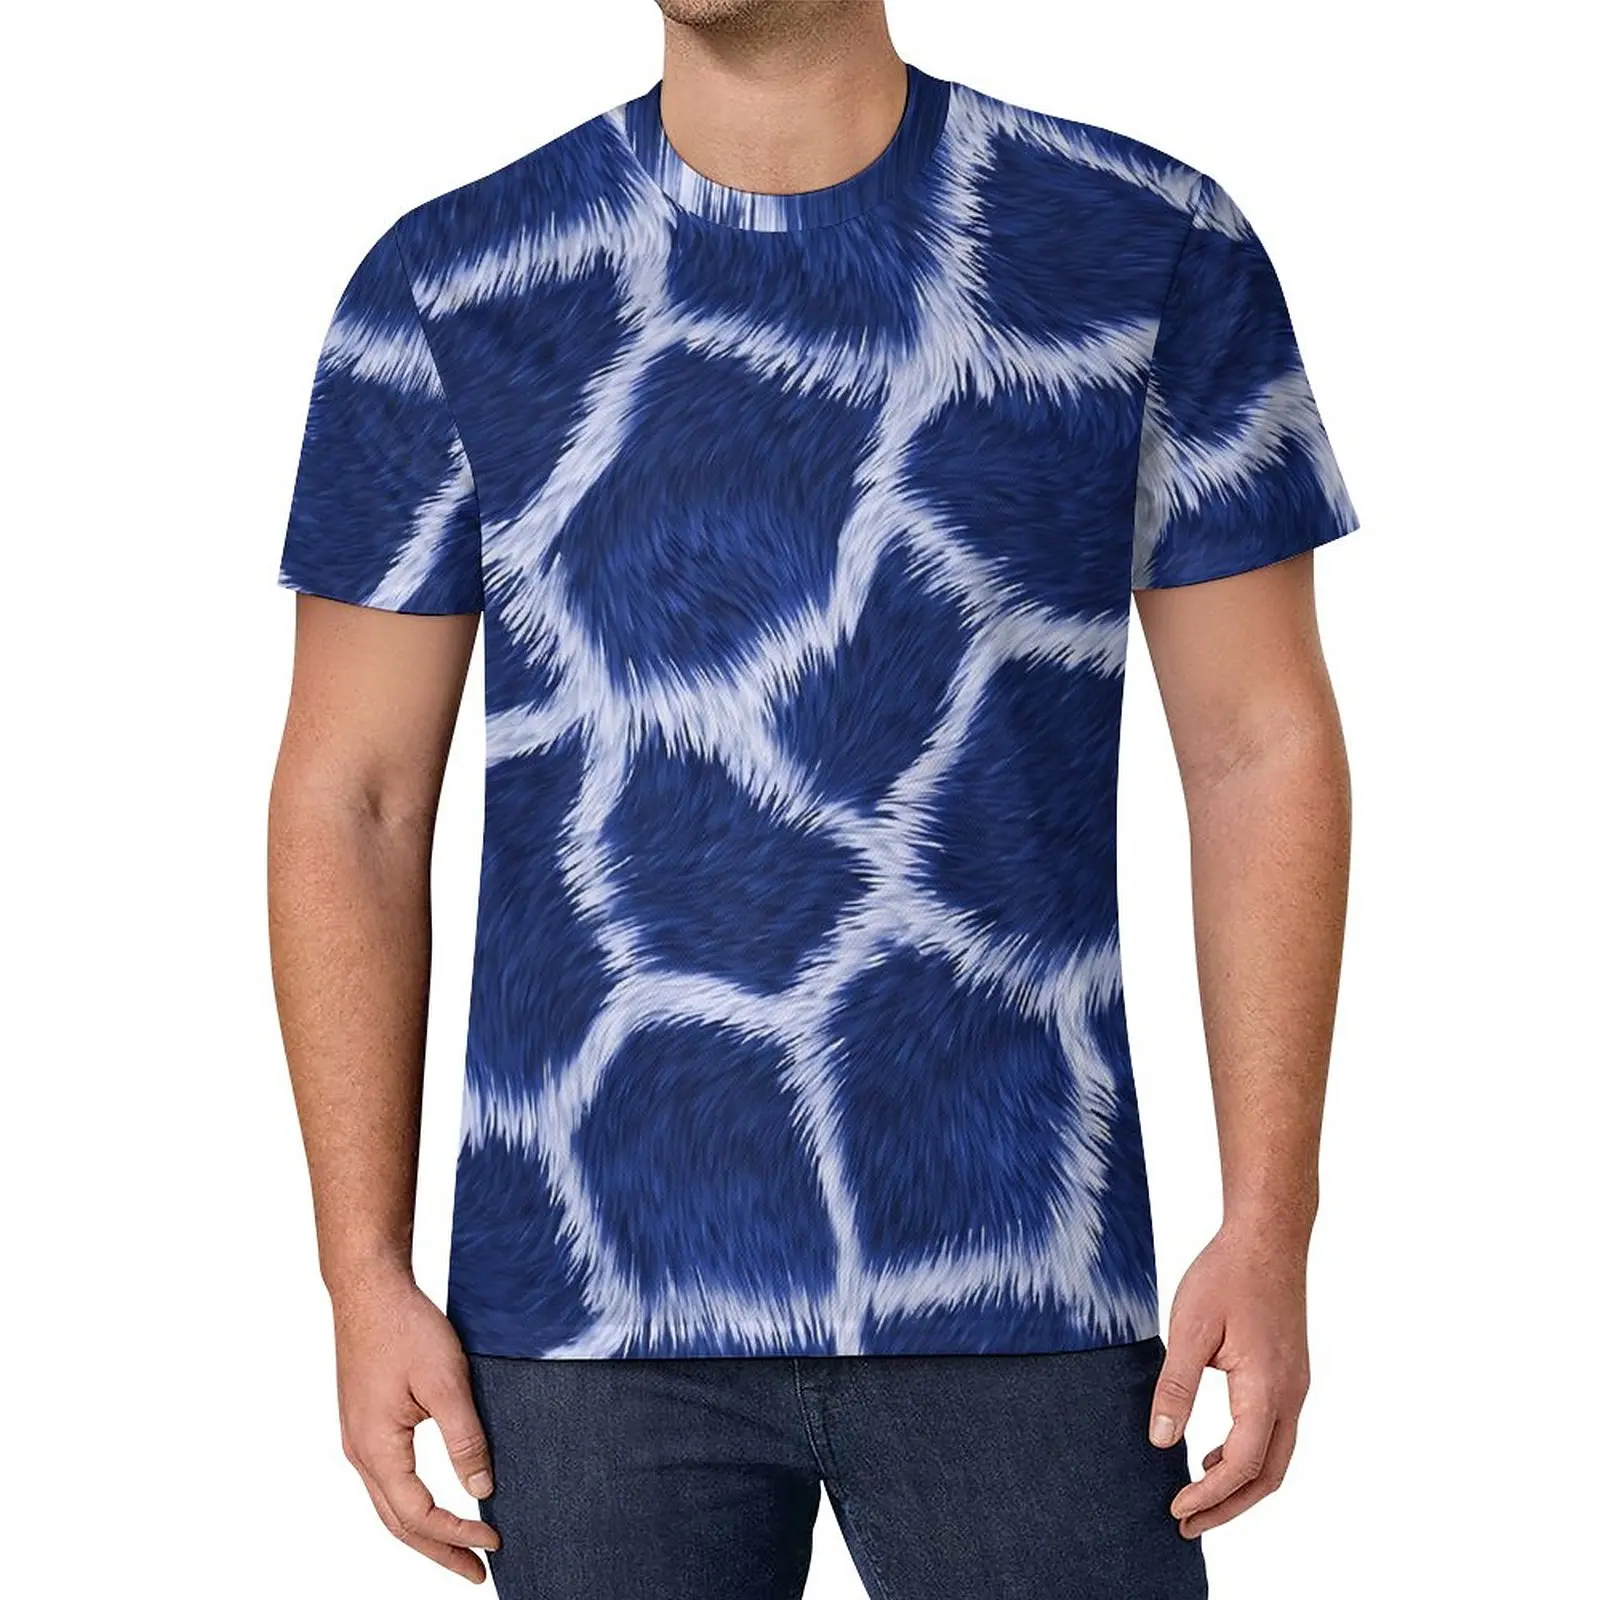 

Голубая футболка с изображением жирафа, трендовые футболки с животным принтом, потрясающая футболка для пары, Пляжная футболка с коротким рукавом, индивидуальные футболки